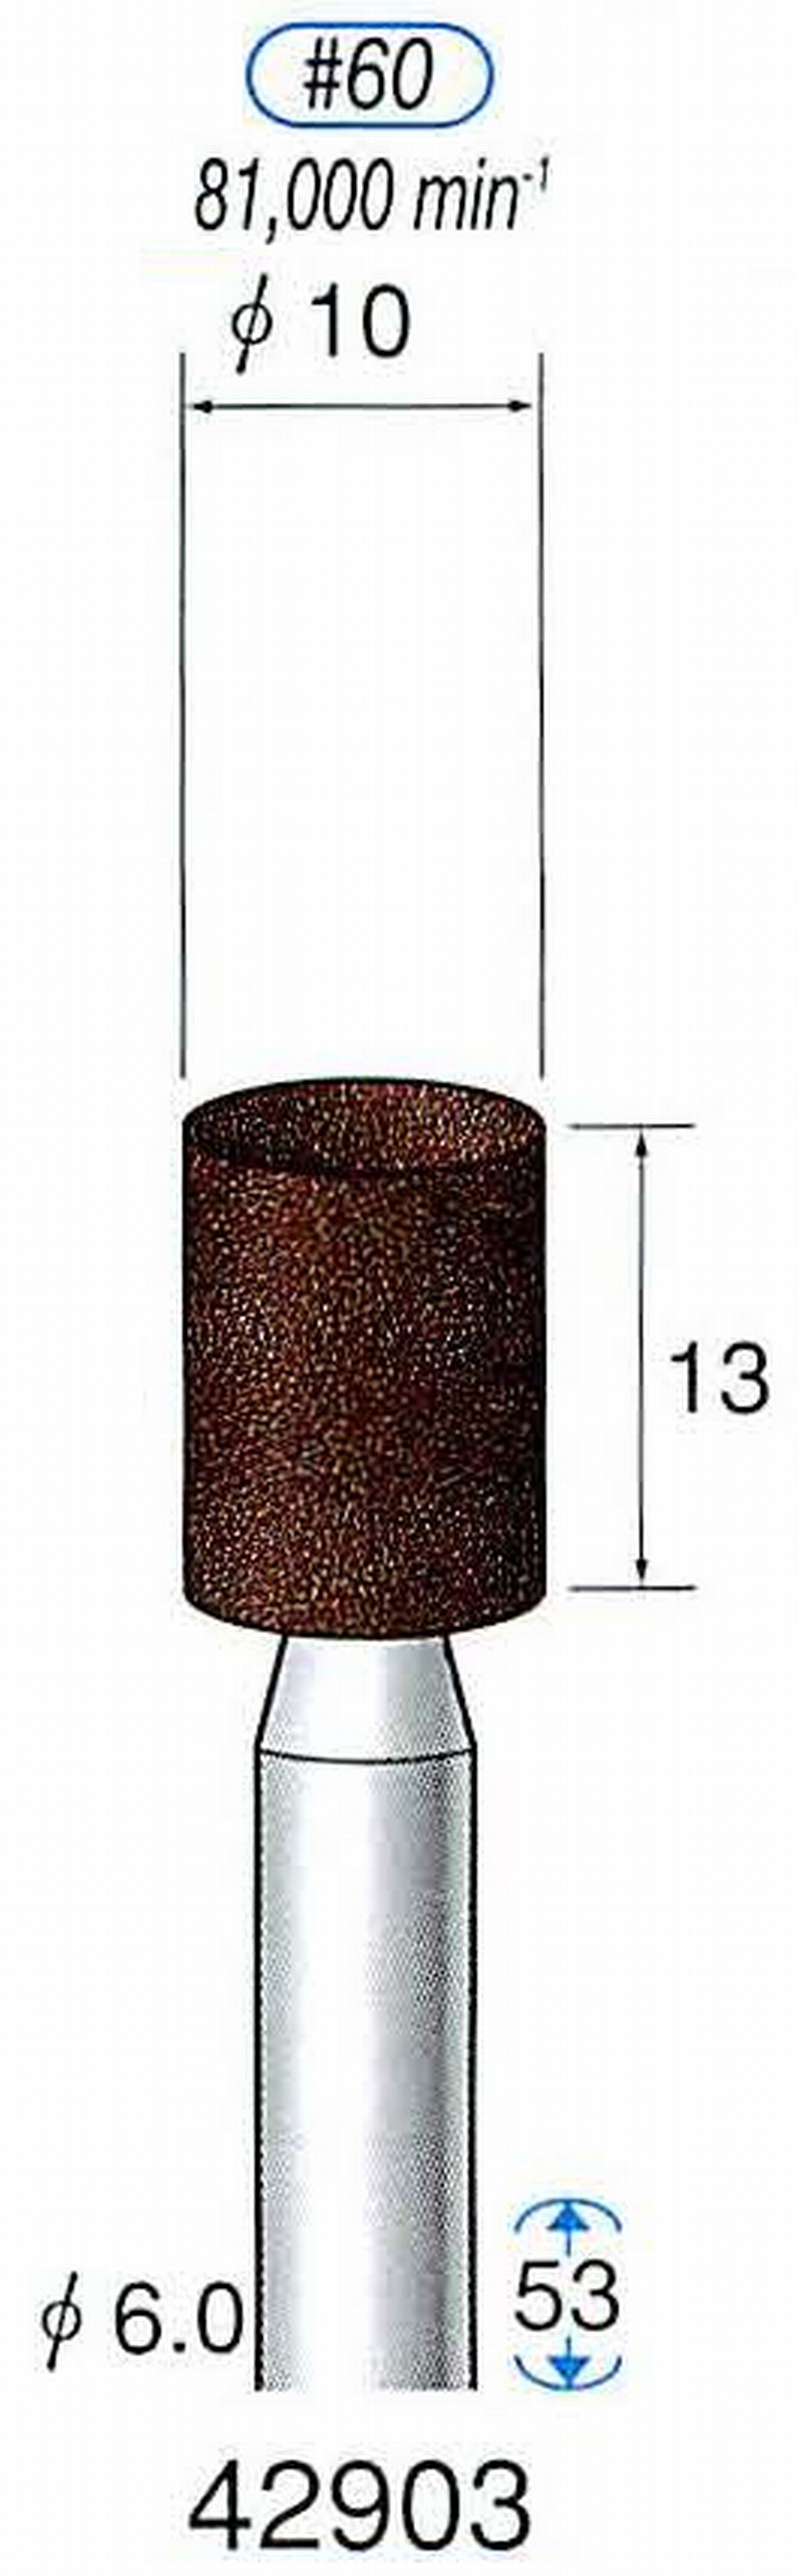 ナカニシ/NAKANISHI 軸付砥石(A・WA砥粒) ブラウン砥石 軸径(シャンク) φ6.0mm 42903